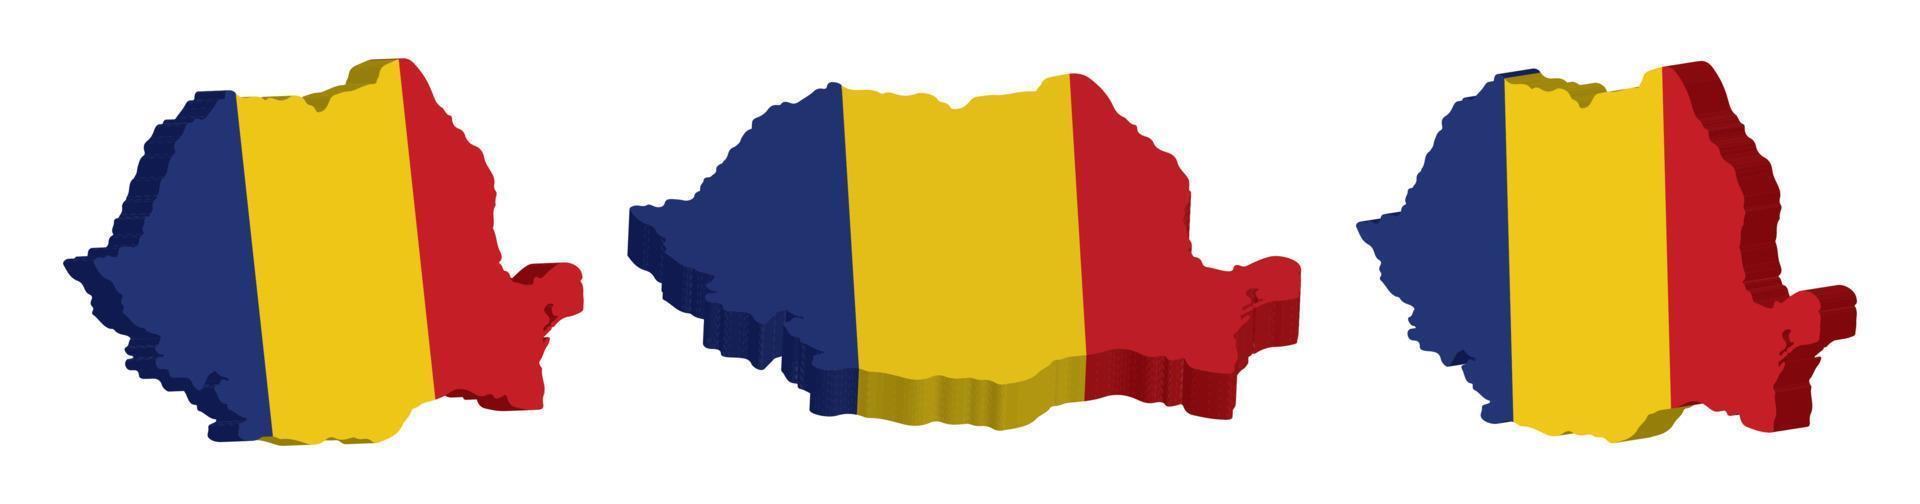 realistisch 3d kaart van Roemenië vector ontwerp sjabloon